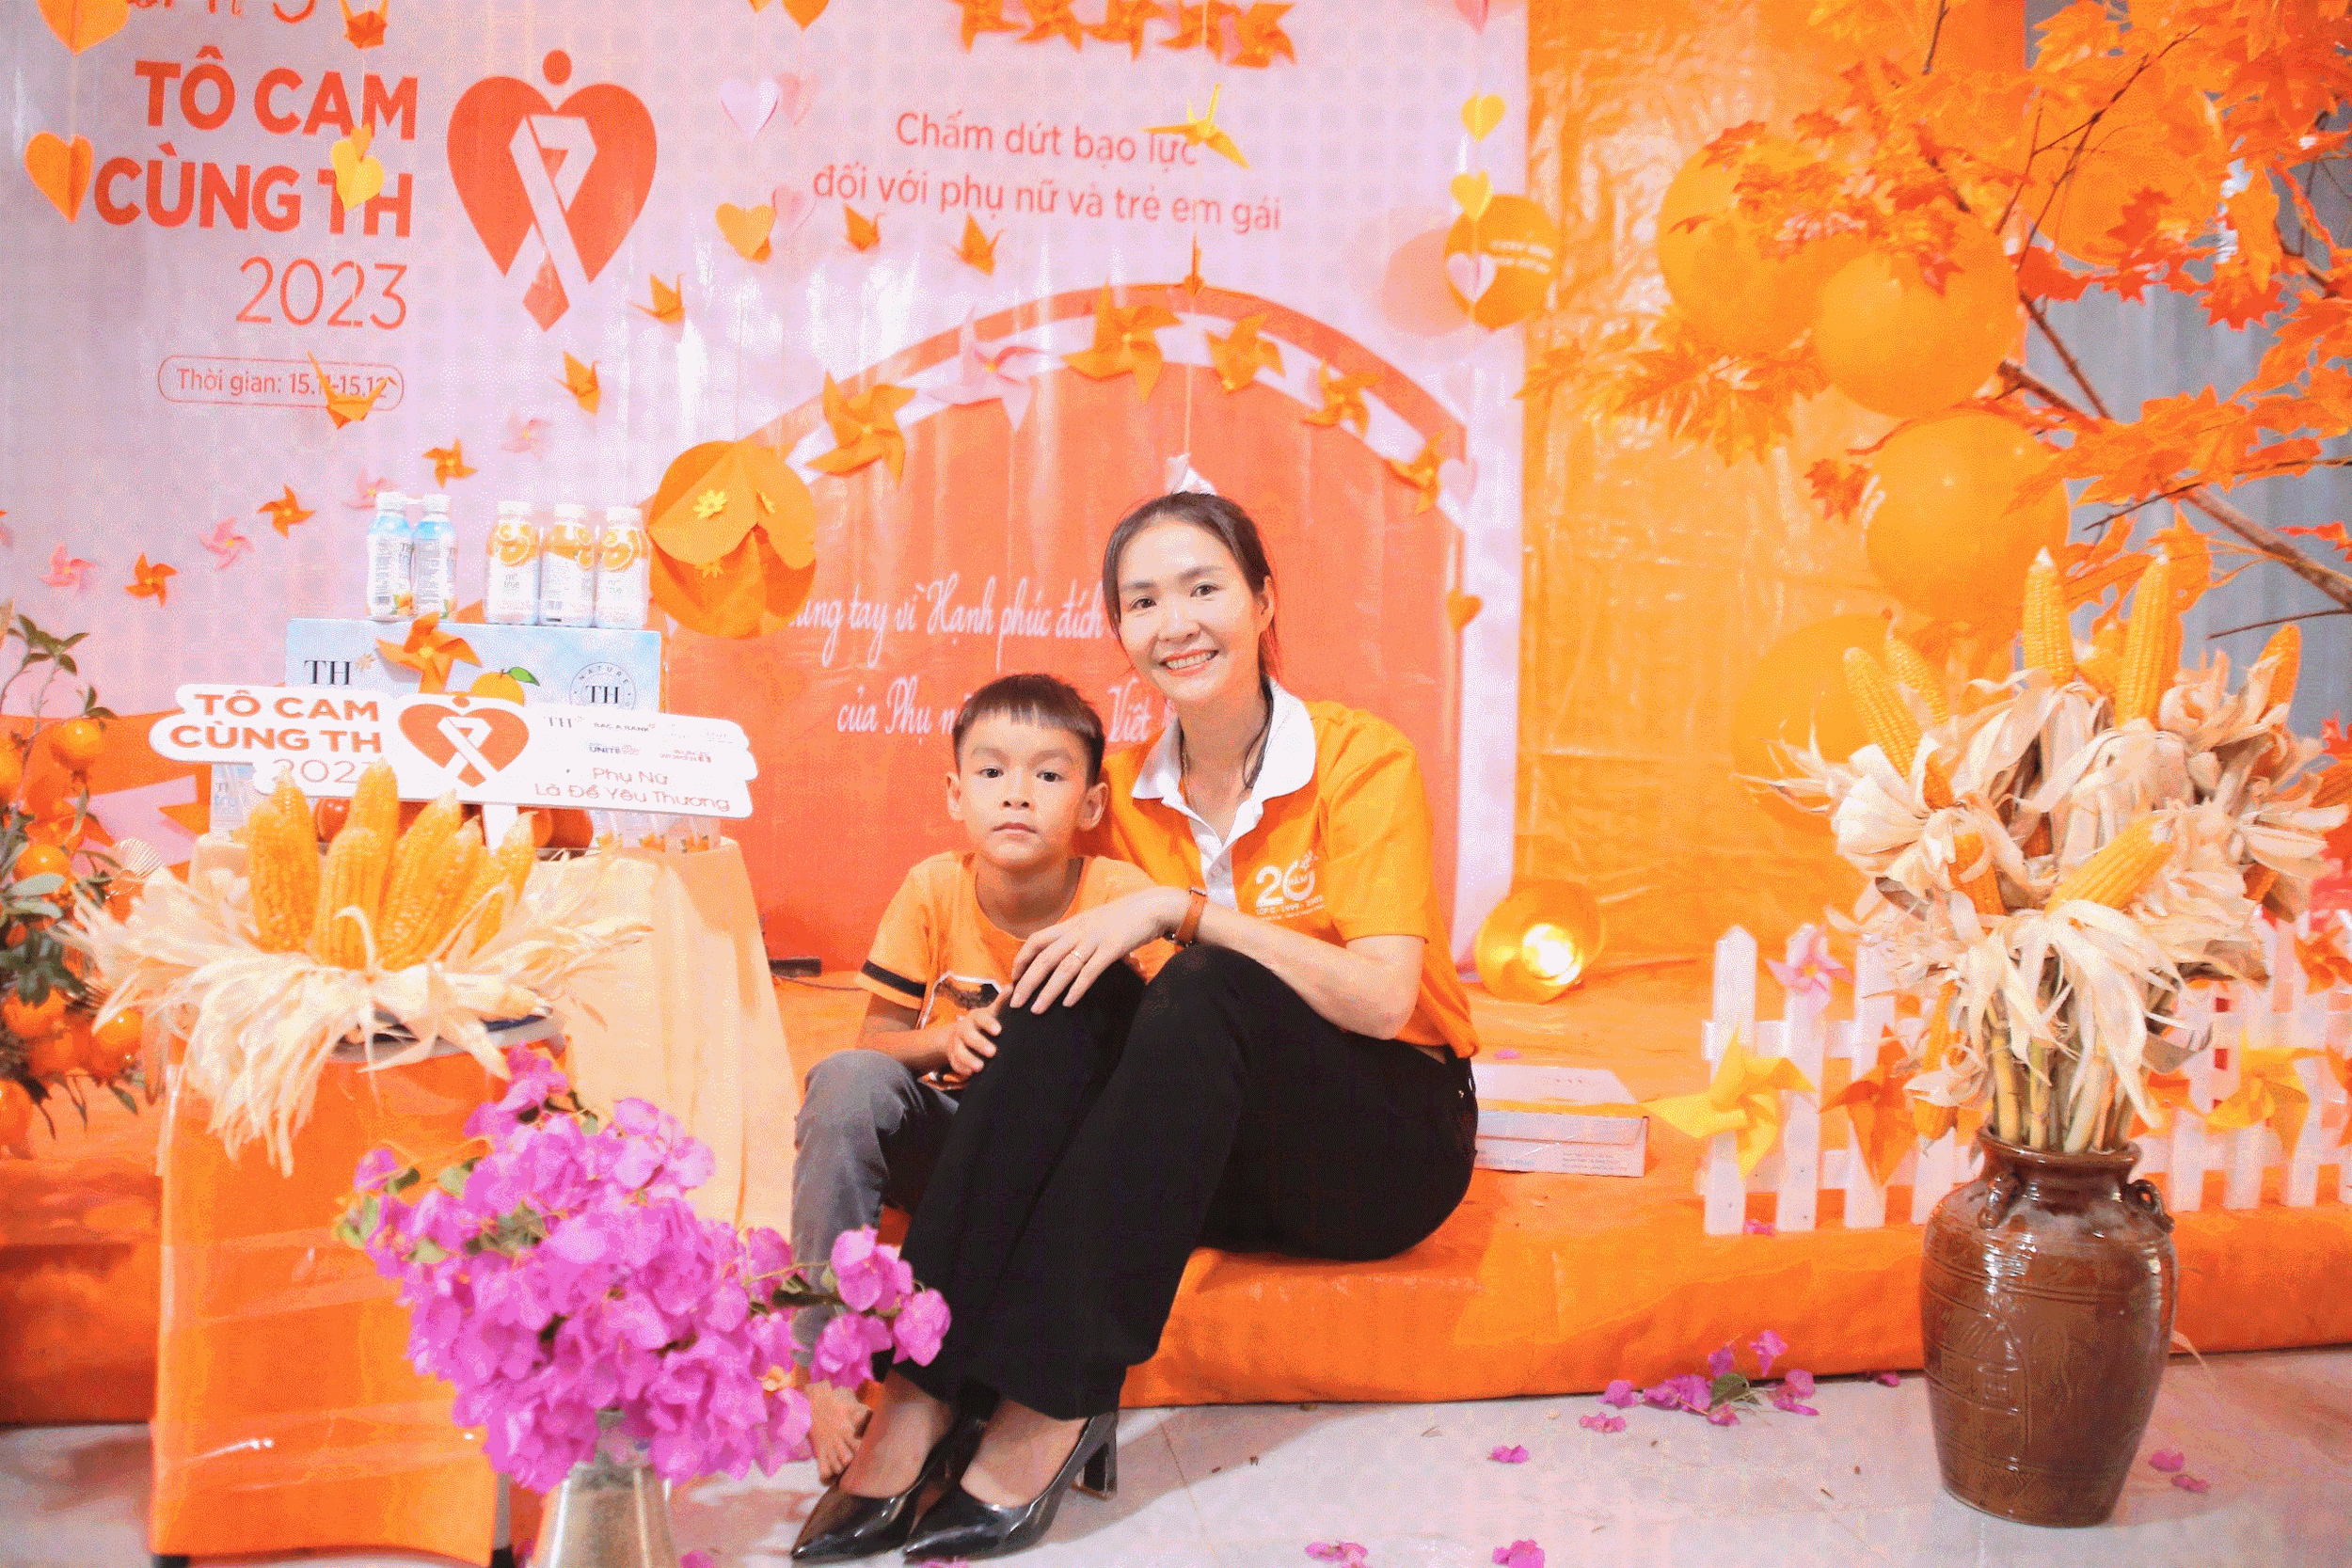 “Tô cam cùng TH 2023 - Chung tay vì hạnh phúc đích thực của phụ nữ và trẻ em Việt Nam